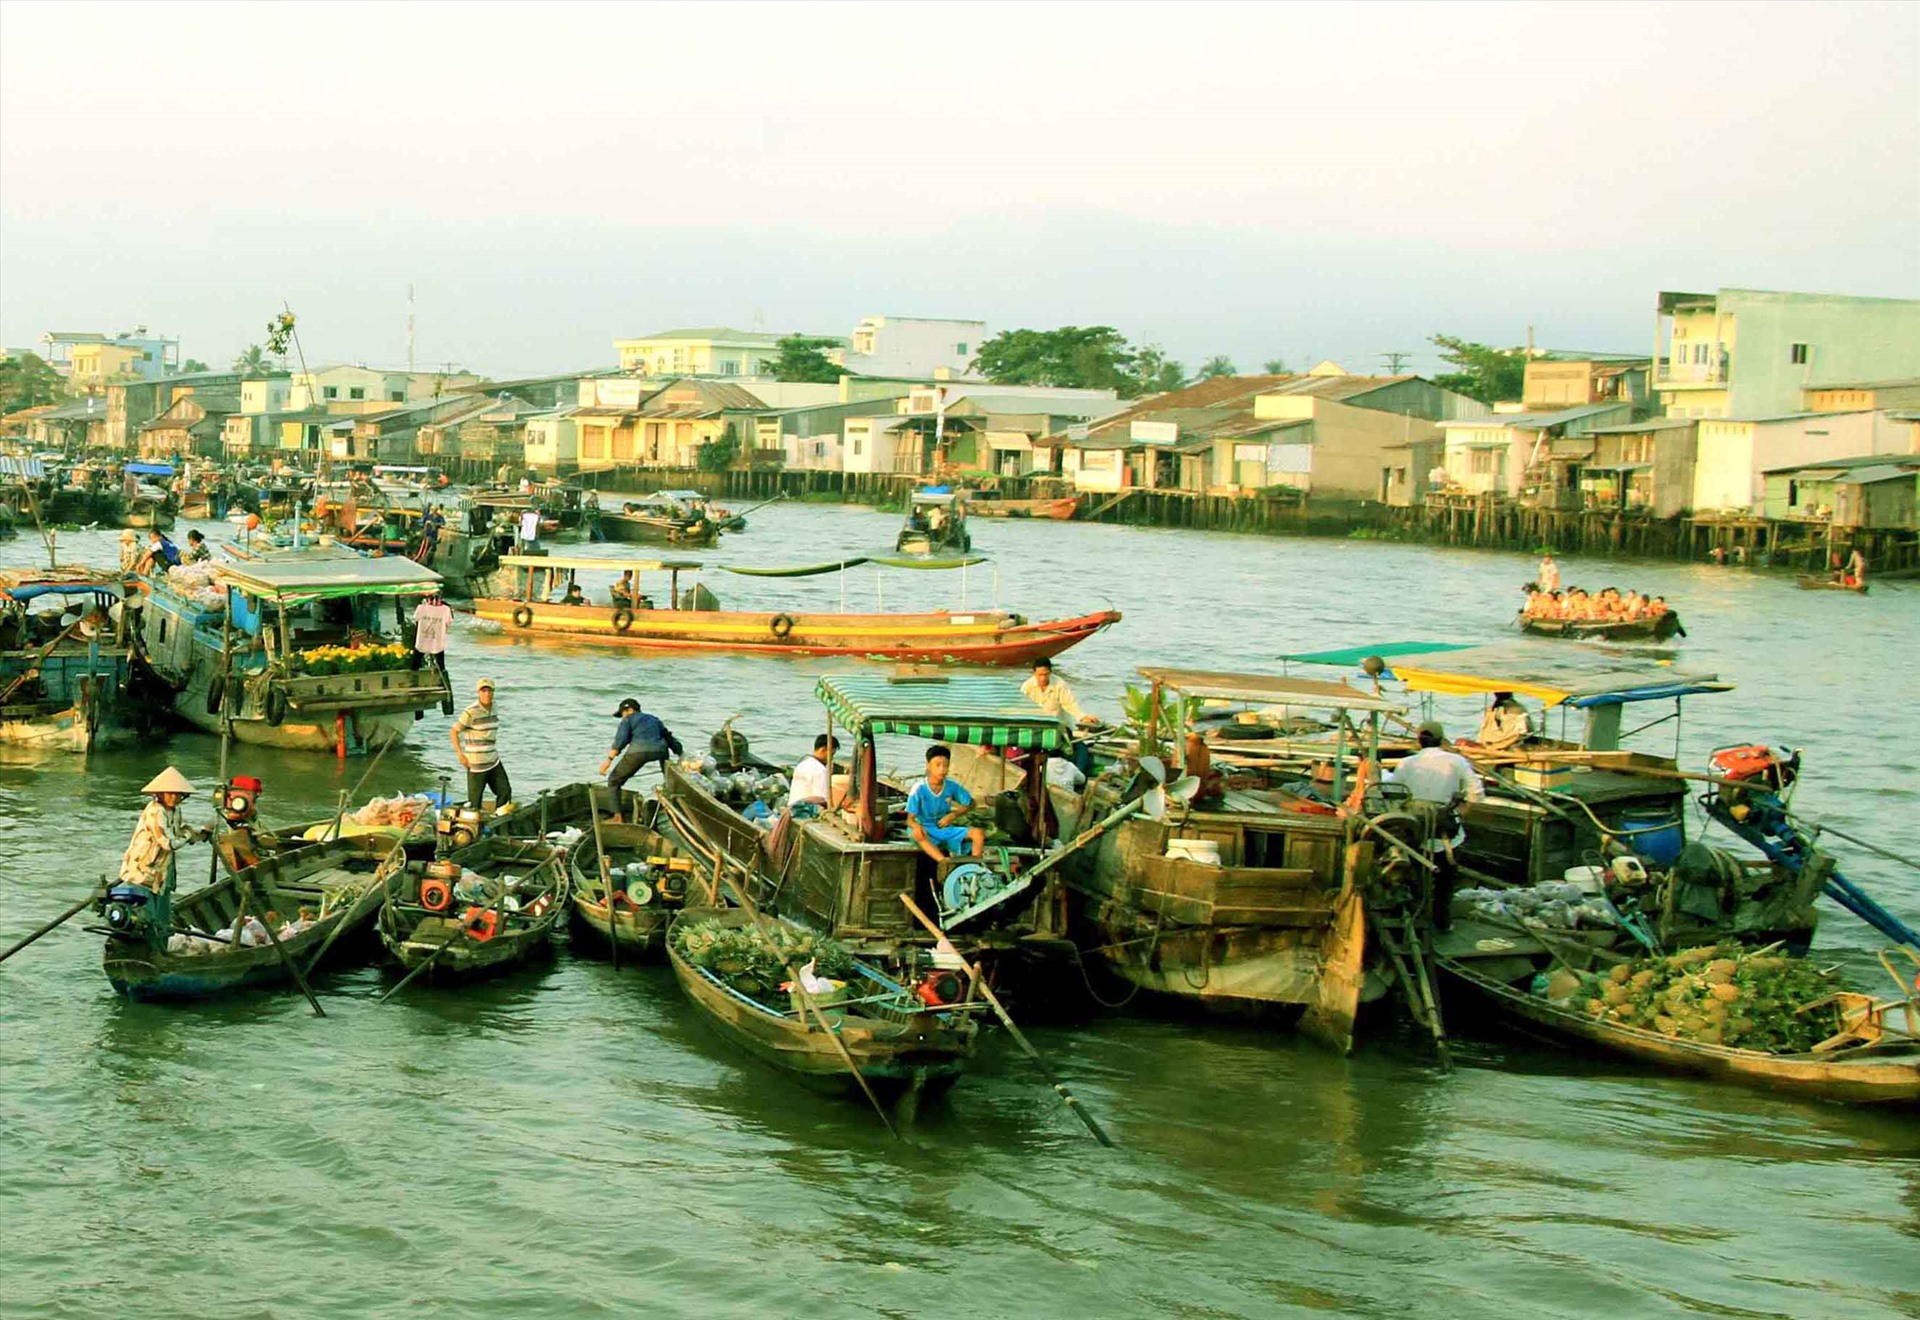 Từ sau giãn cách xã hội được dỡ bỏ, chợ nổi Cái Răng đã nhộn nhịp trở lại. Từ buổi sớm, các ghe thuyền tấp nhập hoạt động trên sông.